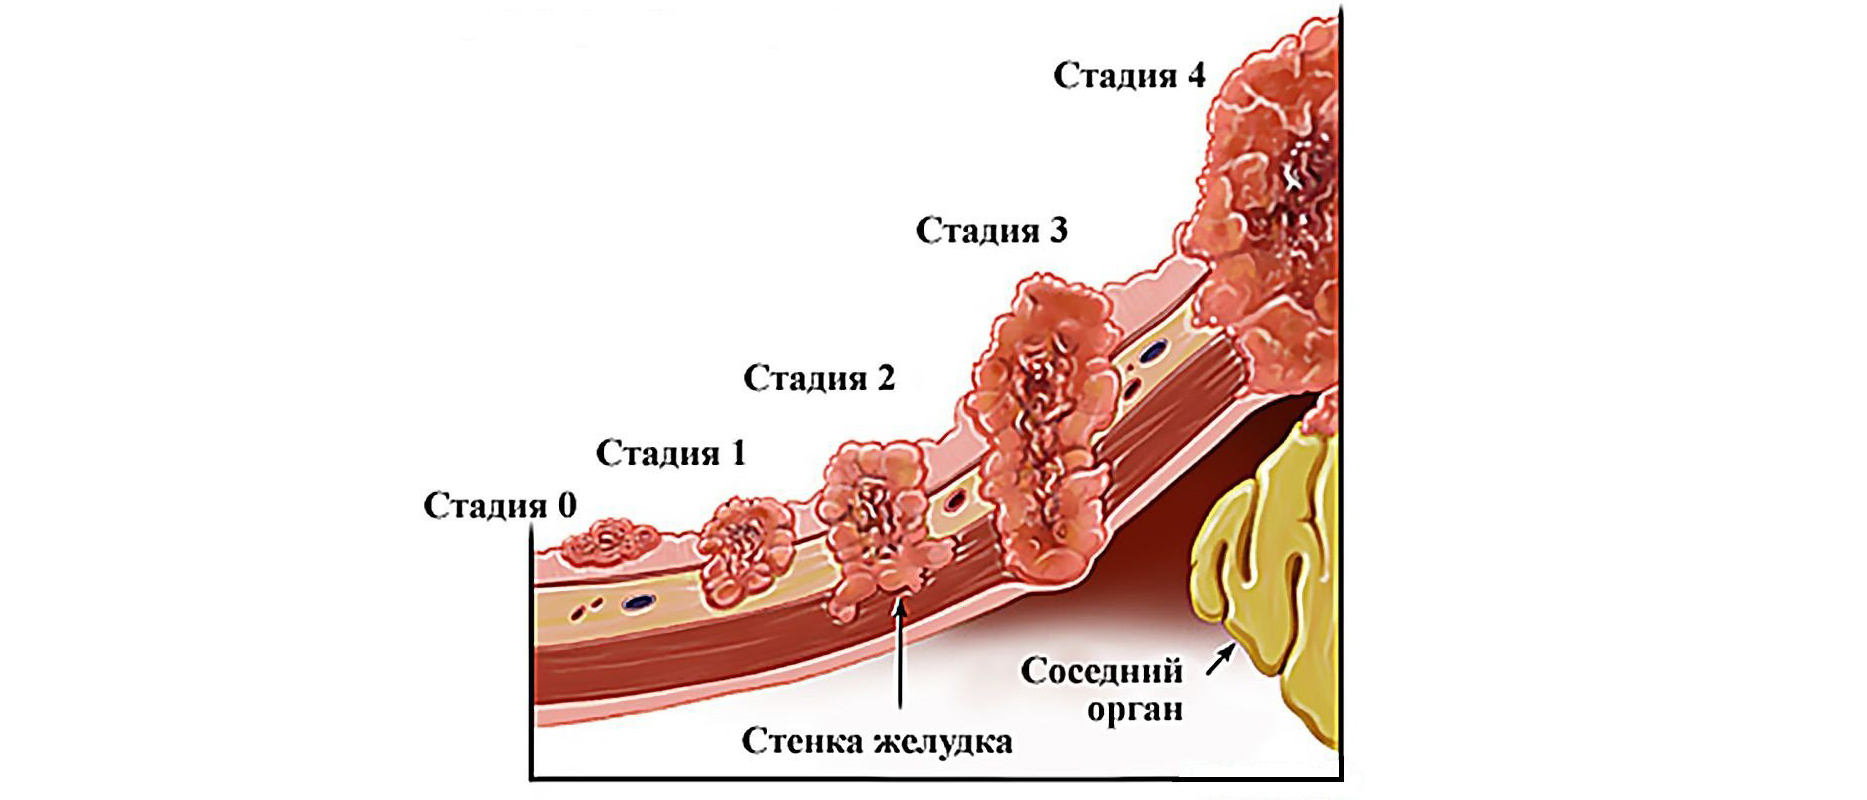 Рак 4 стадии вылечивается. Стадии развития опухоли желудка. 3 Стадии развития опухоли. Степени онкологии желудка.